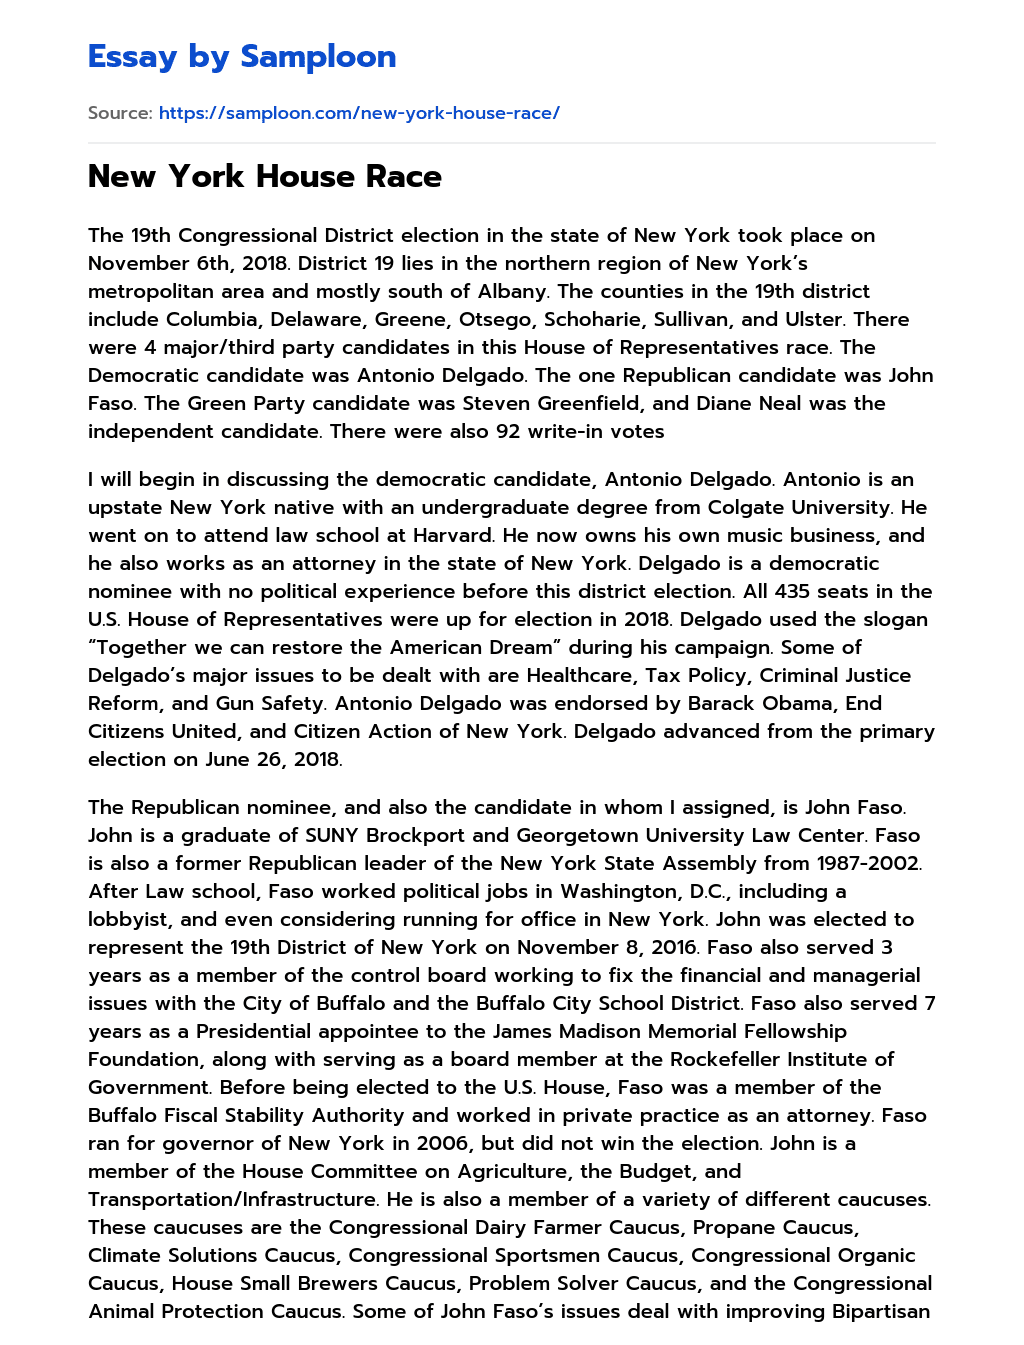 New York House Race essay